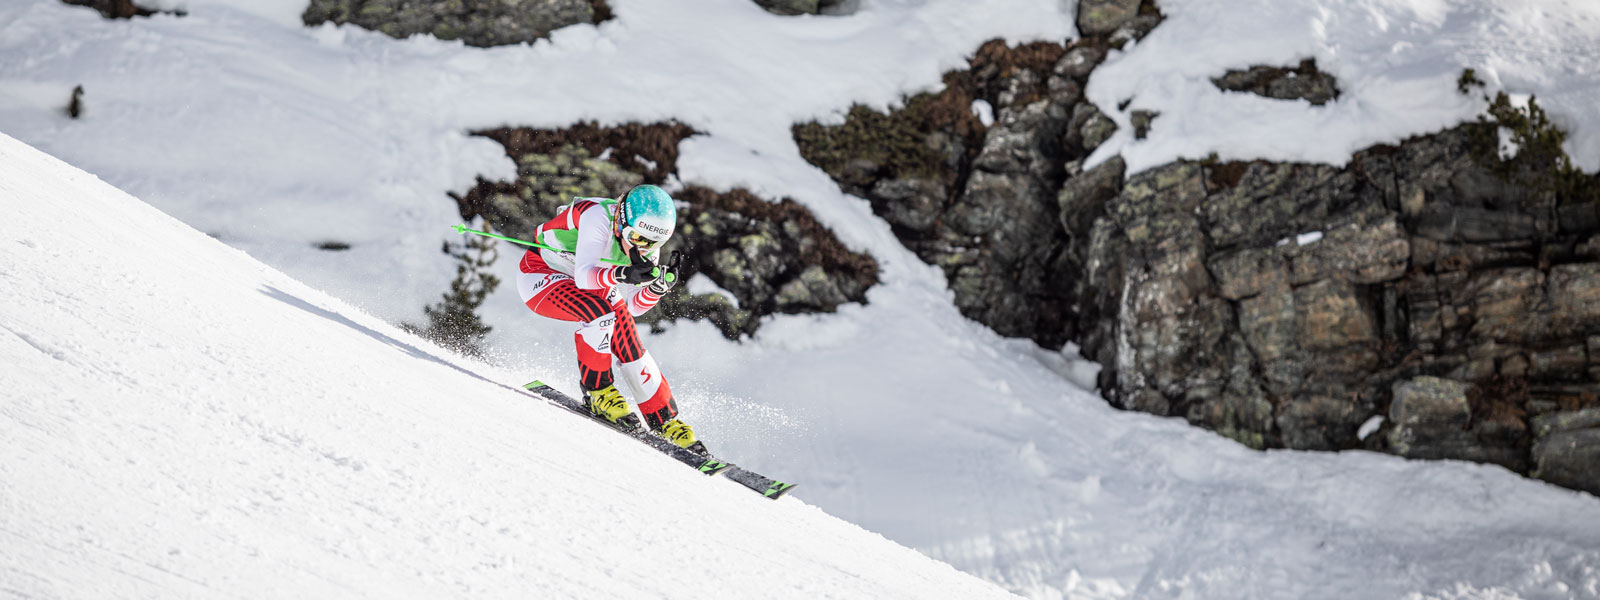 Ski-hardloper in een rood en wit racepak in een bergafwaarts positie met een lichte schommel met grote met sneeuw bedekte rotsen op de achtergrond